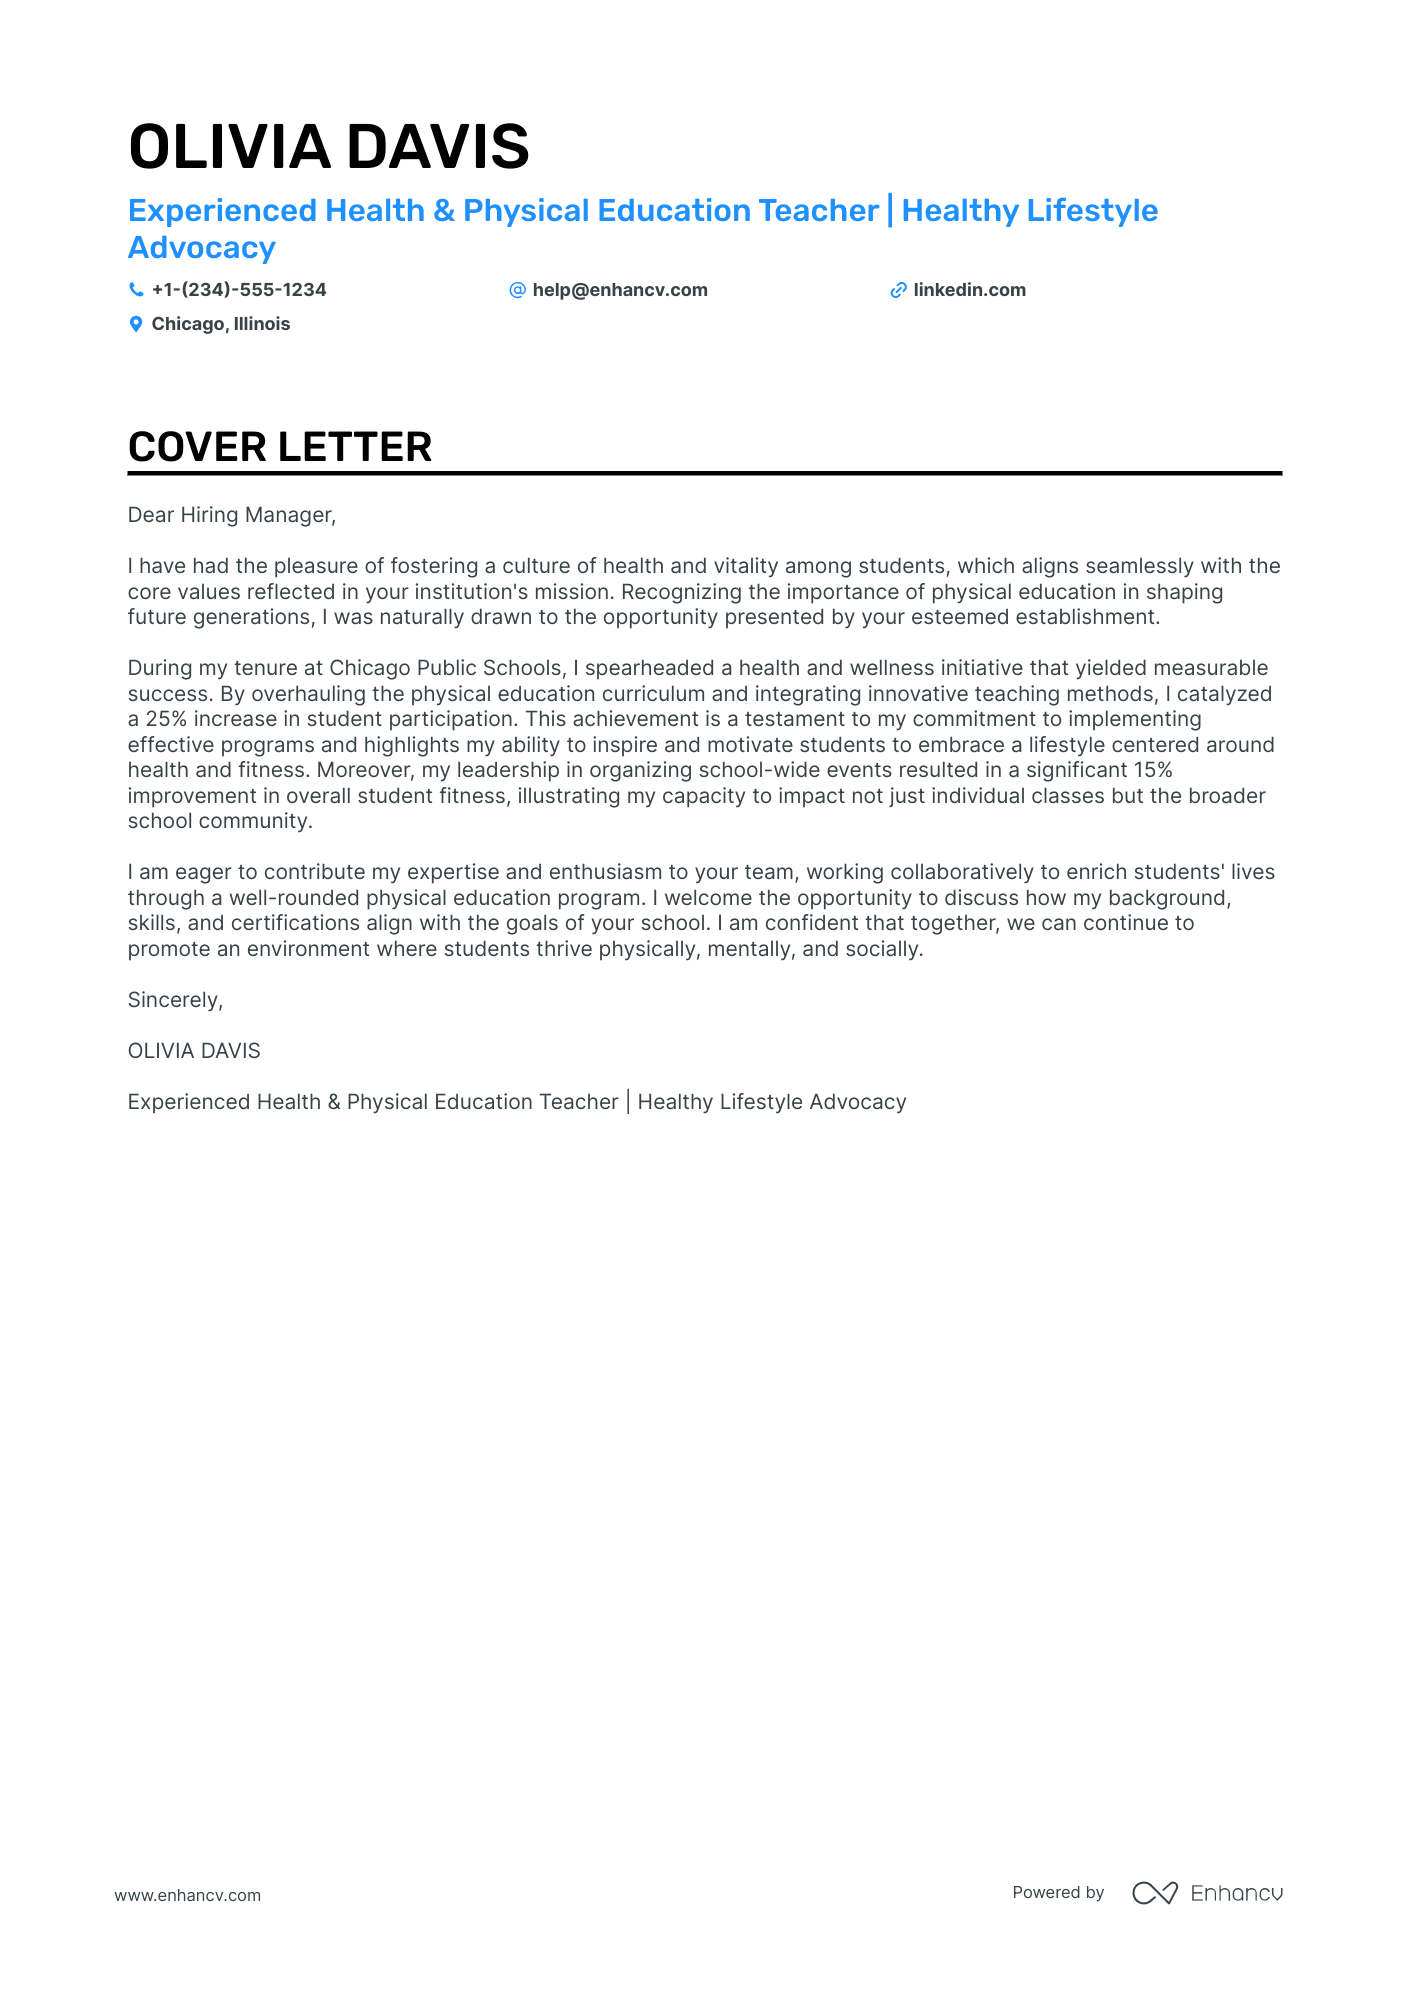 cover letter sample for physical education teacher